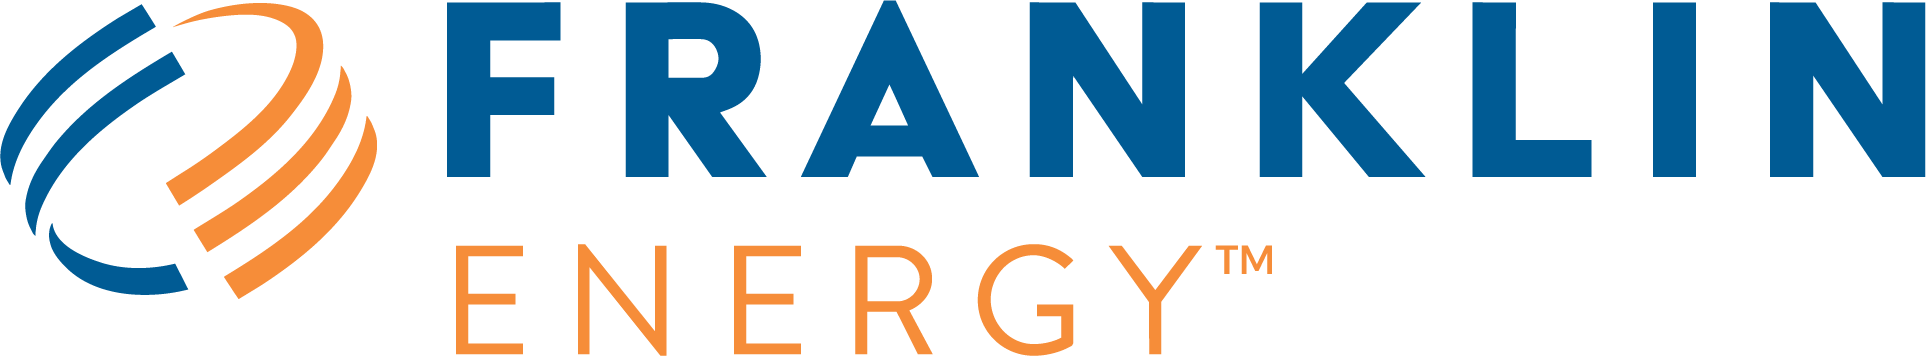 Логотип Franklin Energy